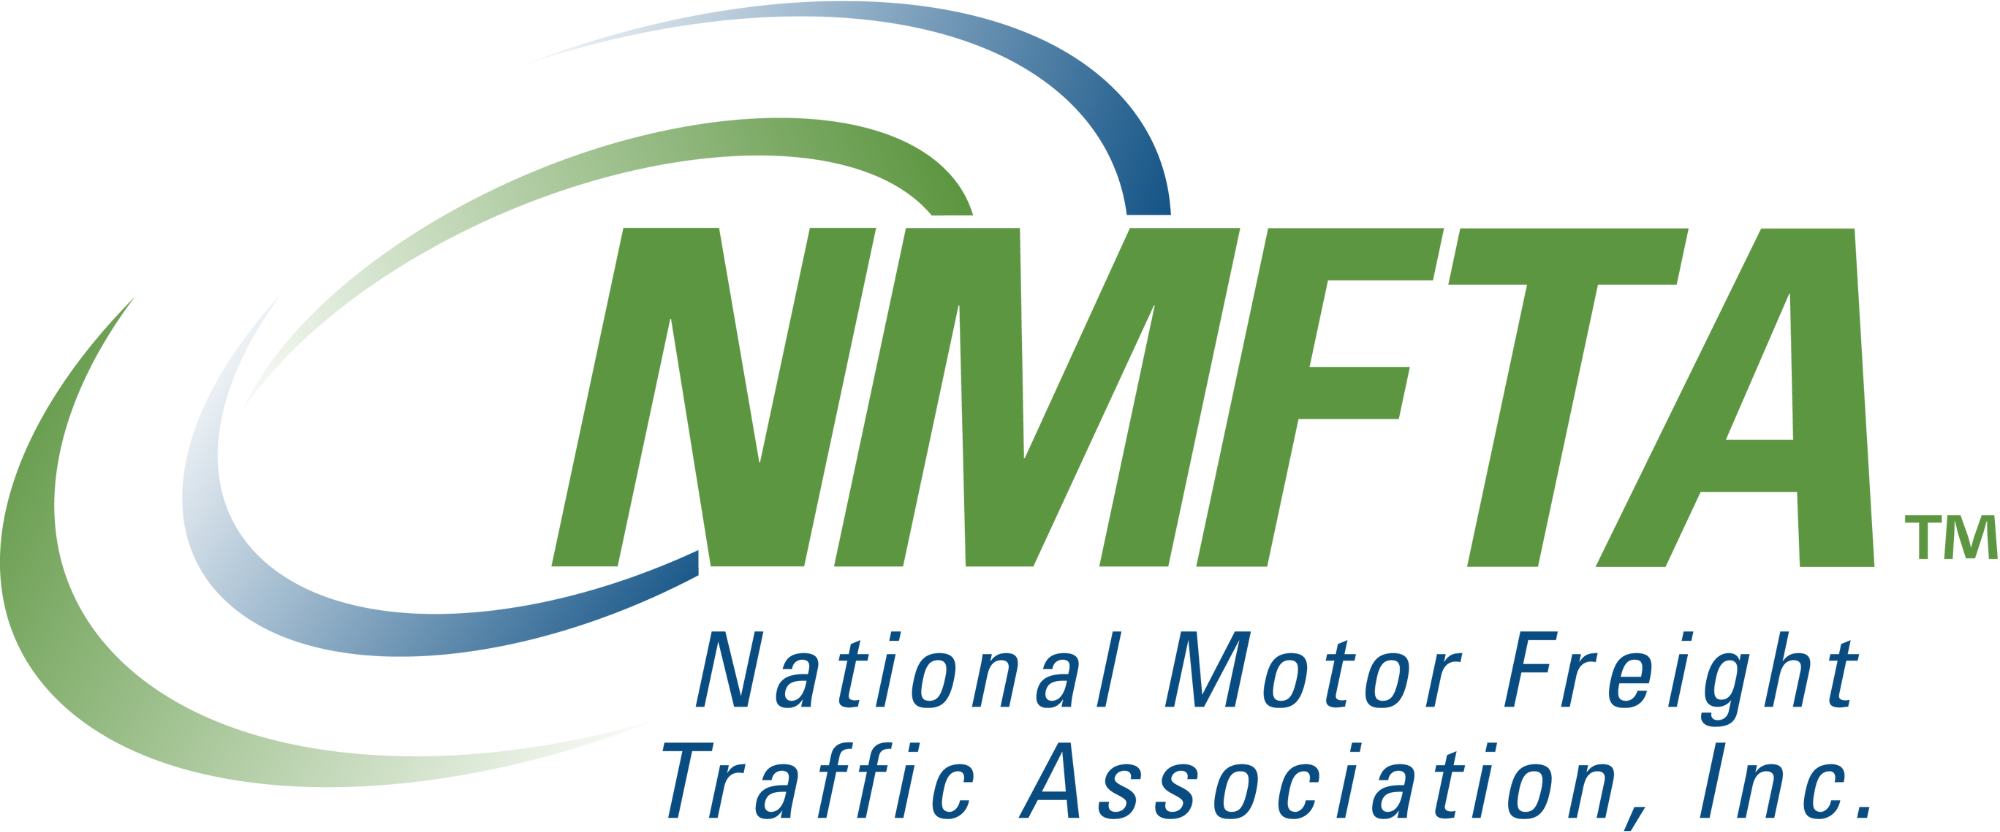 National Motot Freight Taffic Association